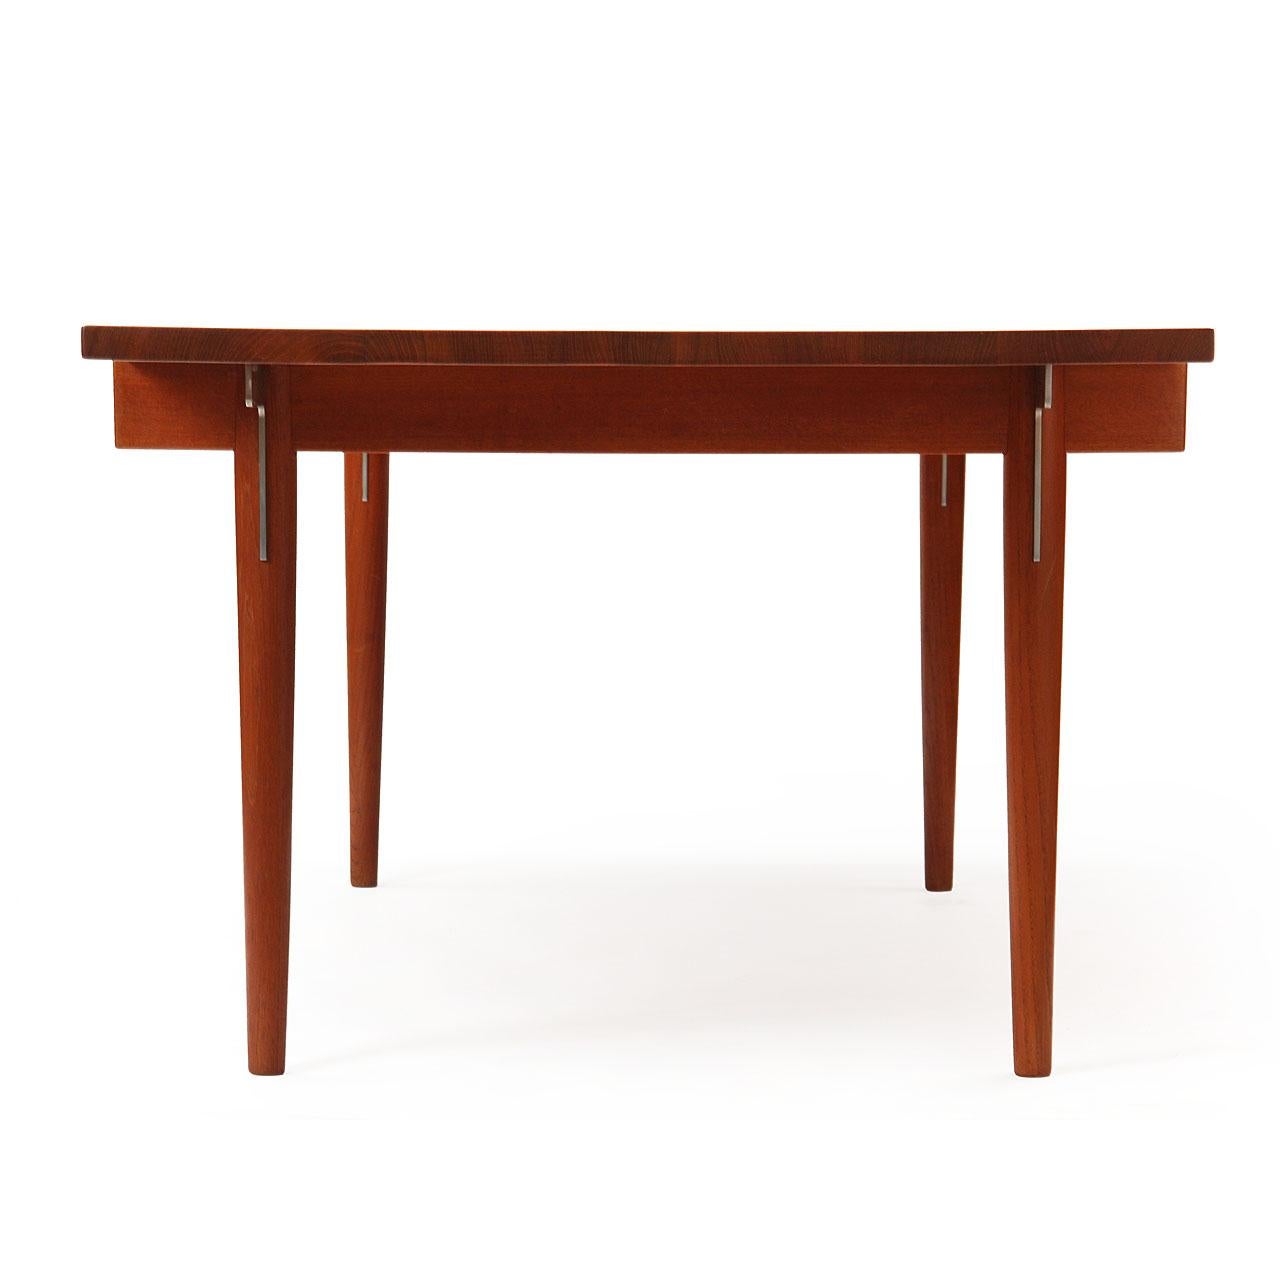 Mid-20th Century 1960s Danish Solid Teak Table / Desk by Hans Wegner for Johannes Hansen For Sale